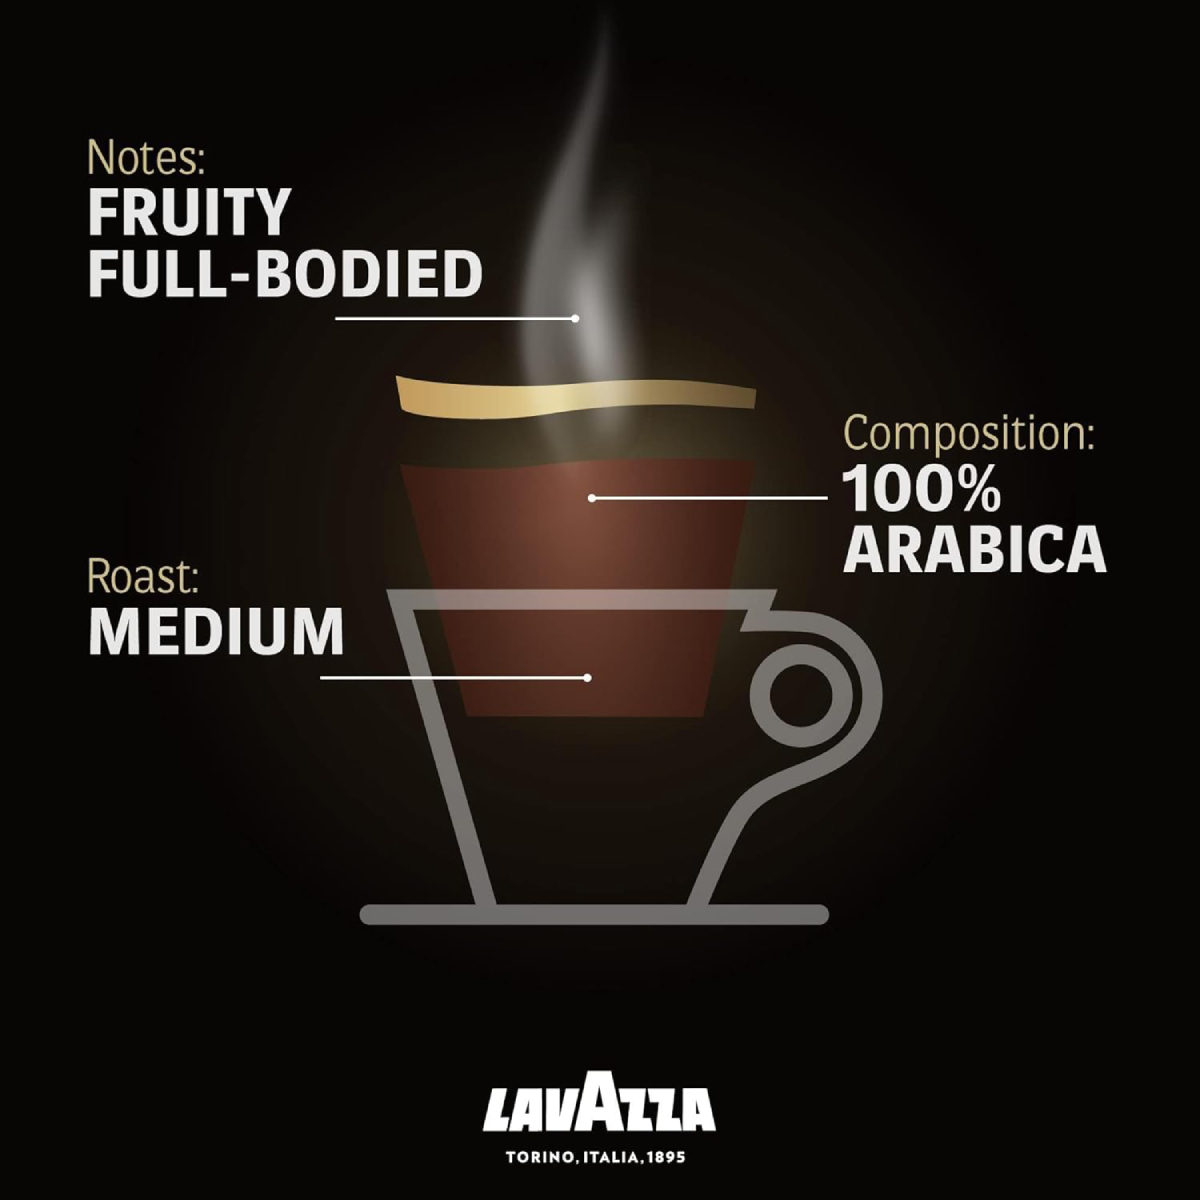 Lavazza Qualita Oro Ground Coffee 250 g